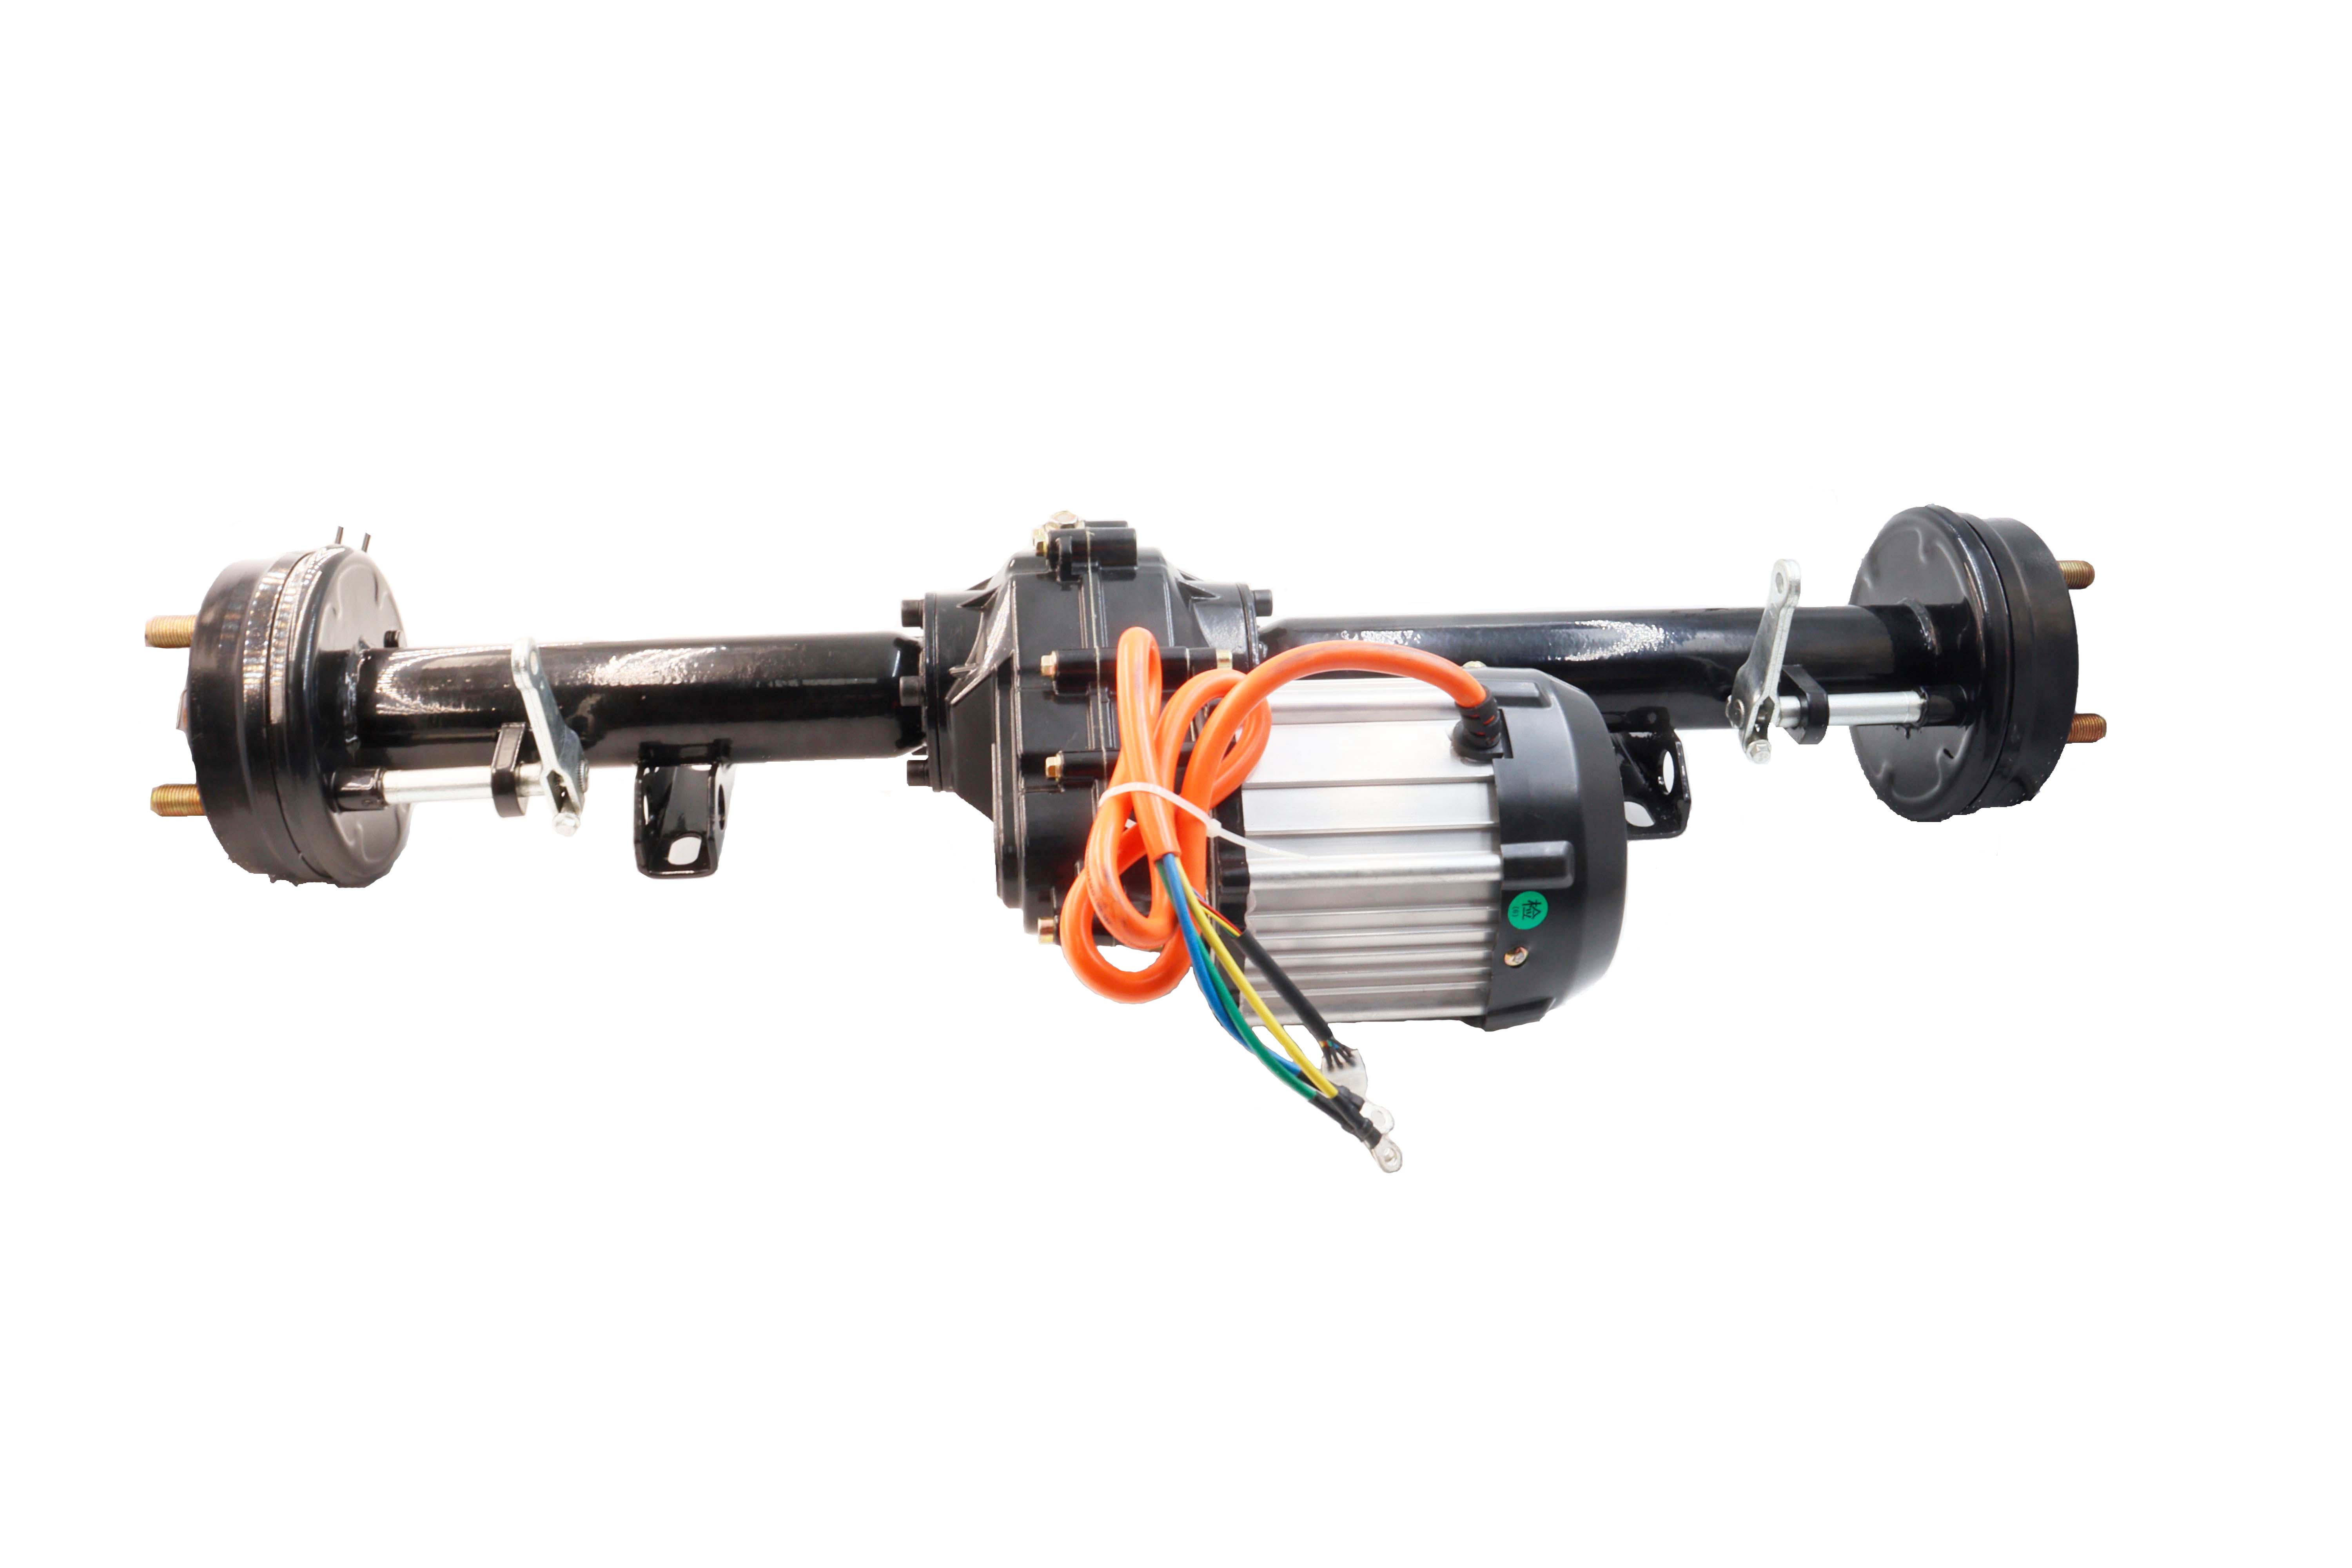 Bezkomutátorový stejnosměrný motor Transaxle Synchronní motor s permanentním magnetem pro sekačku na trávu, golfový vozík, UTV, zemědělské stroje a další terénní vozidla